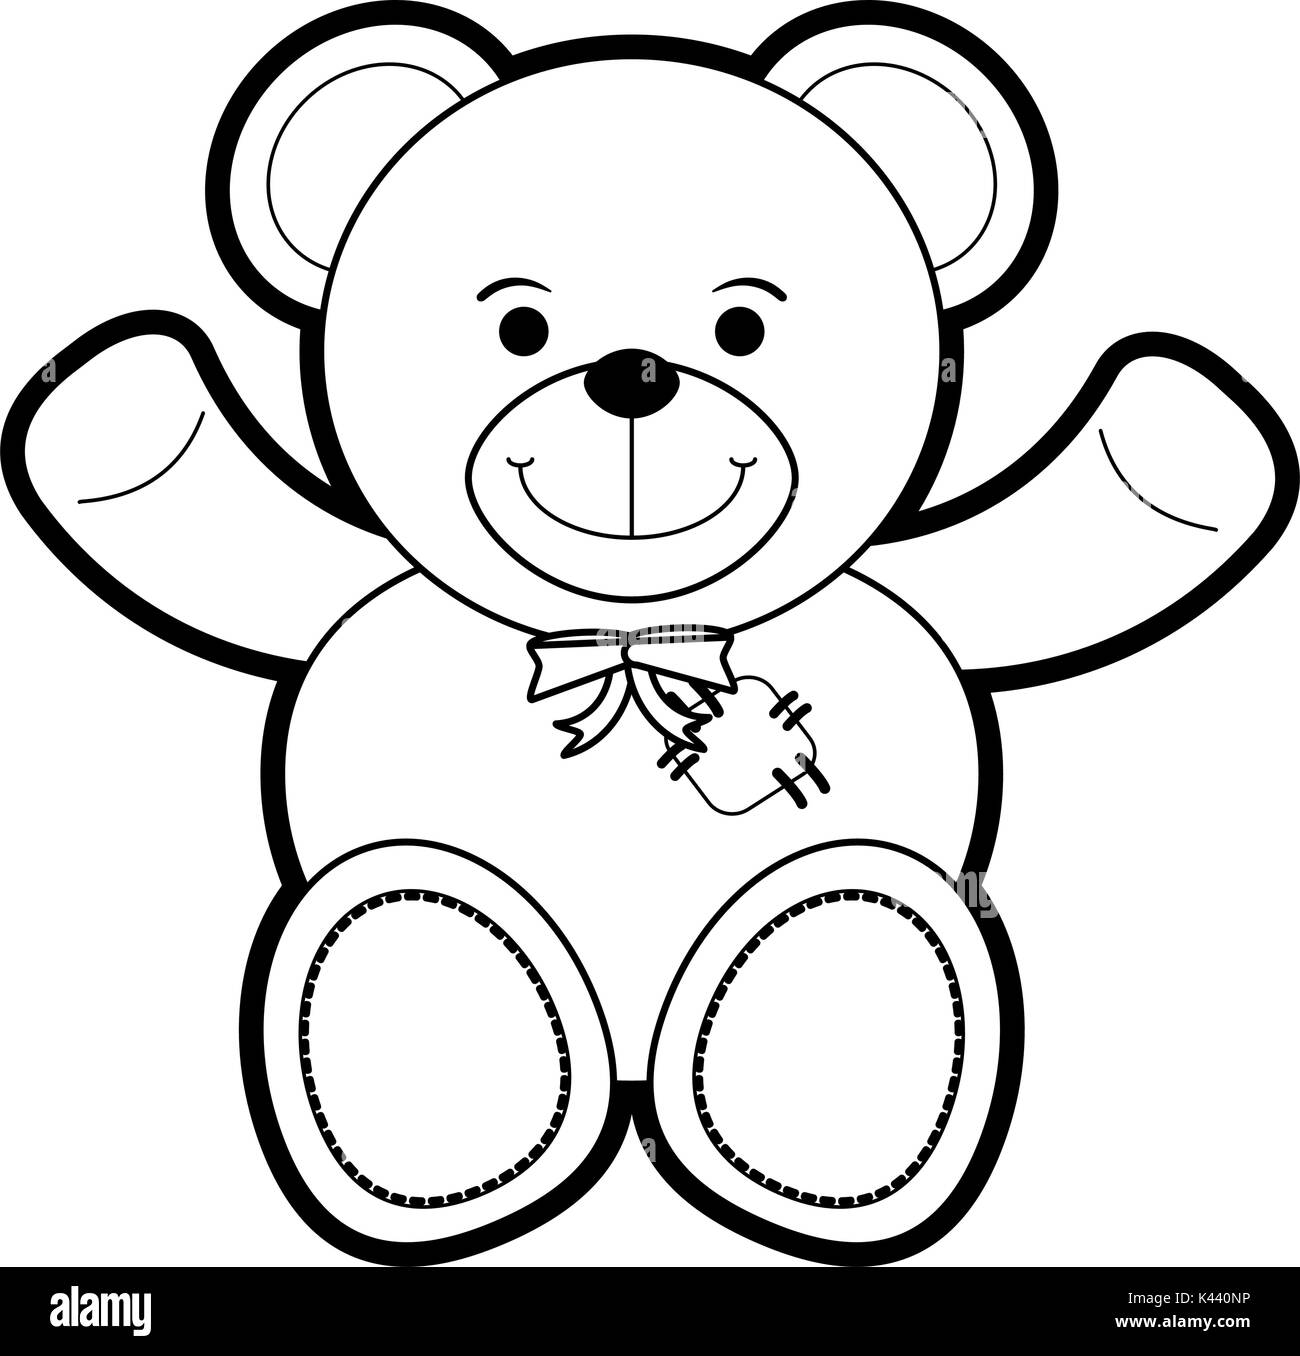 Isolated teddy bear design Stock Vector